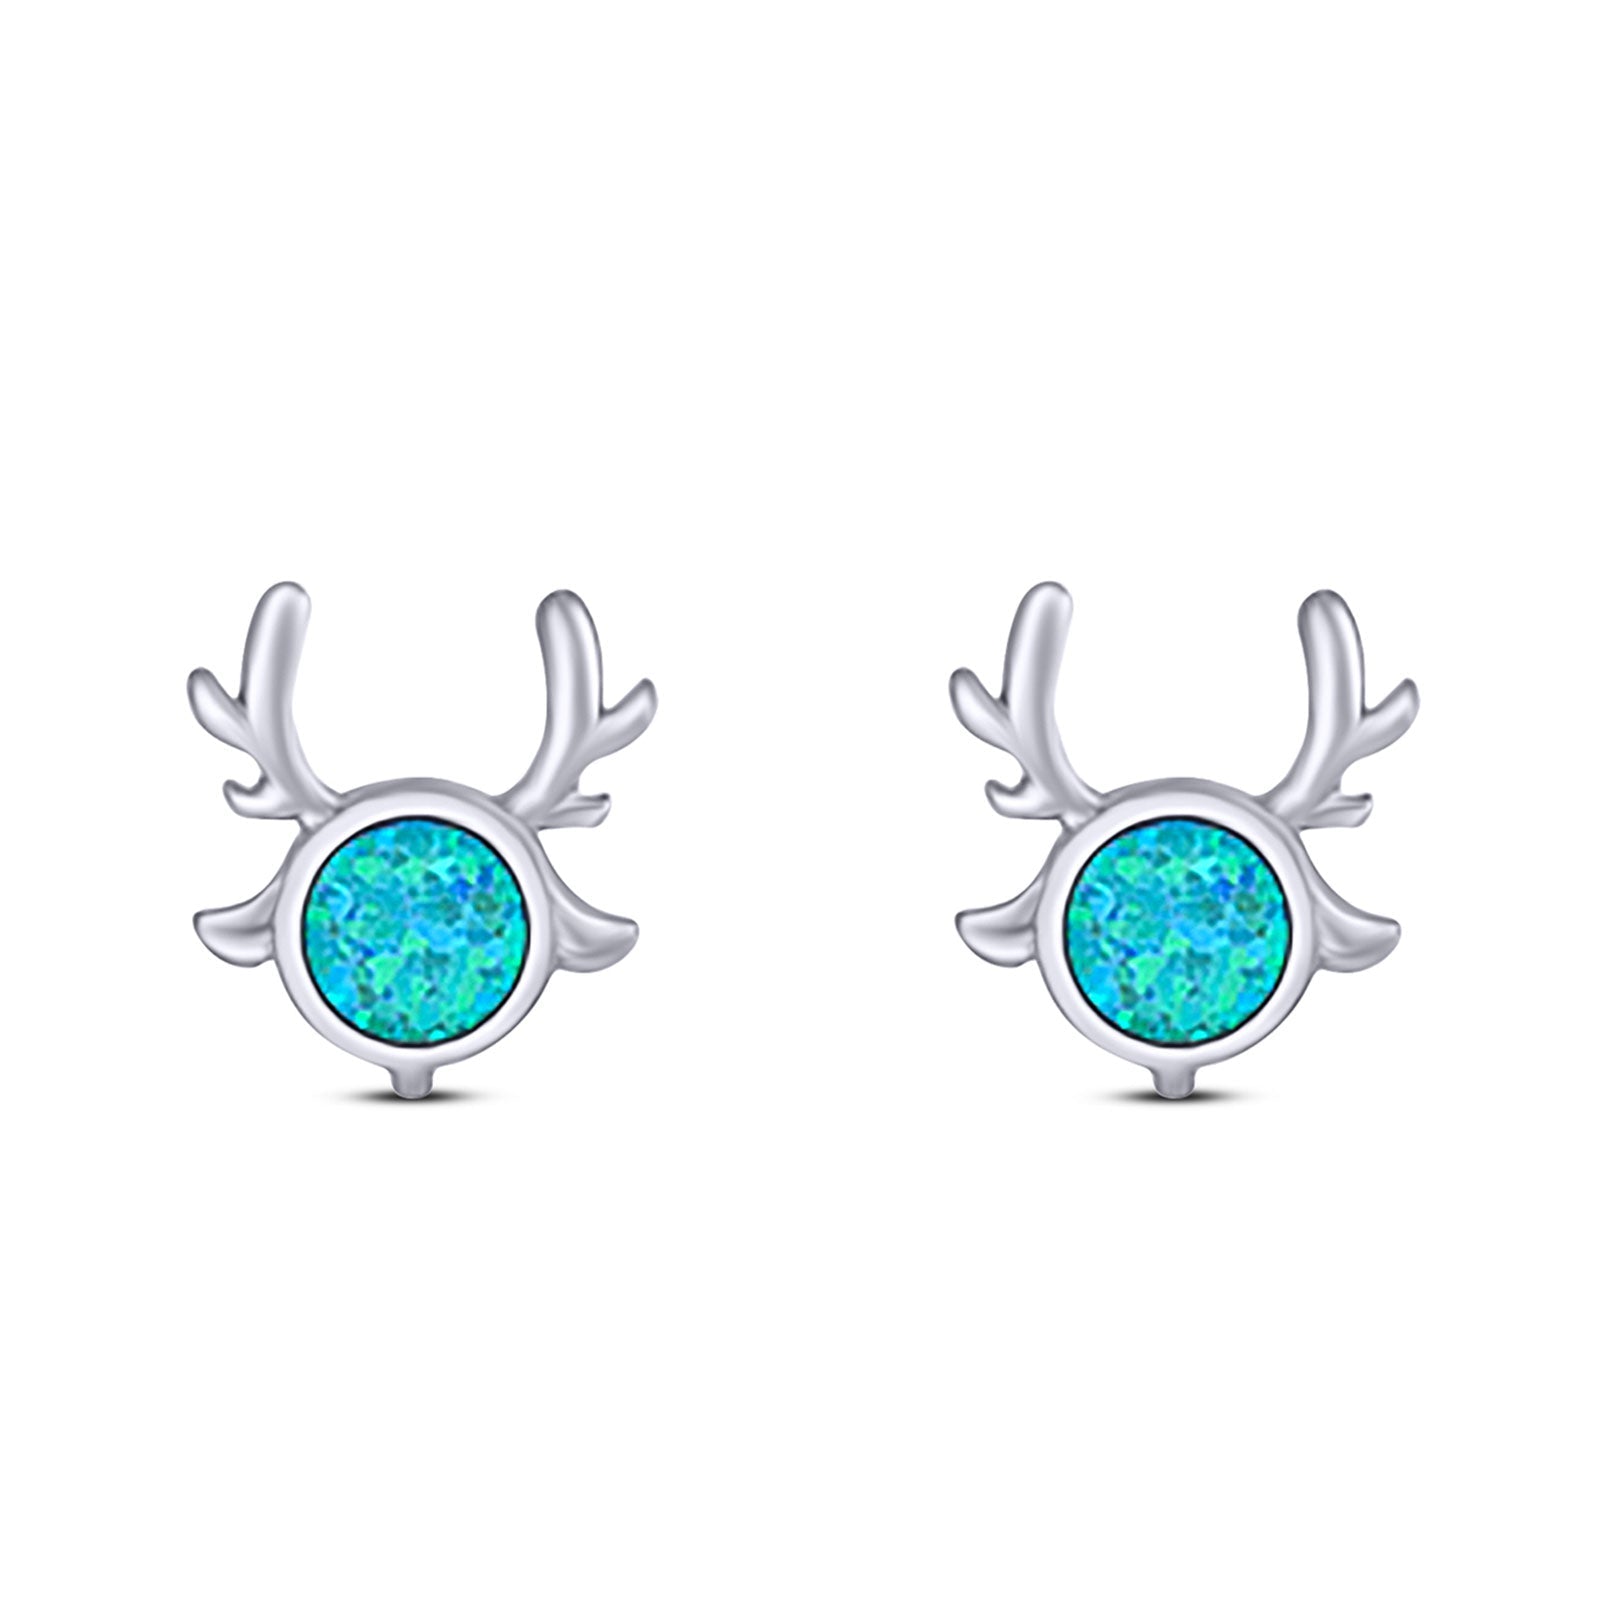 Deer Antler Stud Earring Created Blue Opal Solid 925 Sterling Silver (10.2mm)